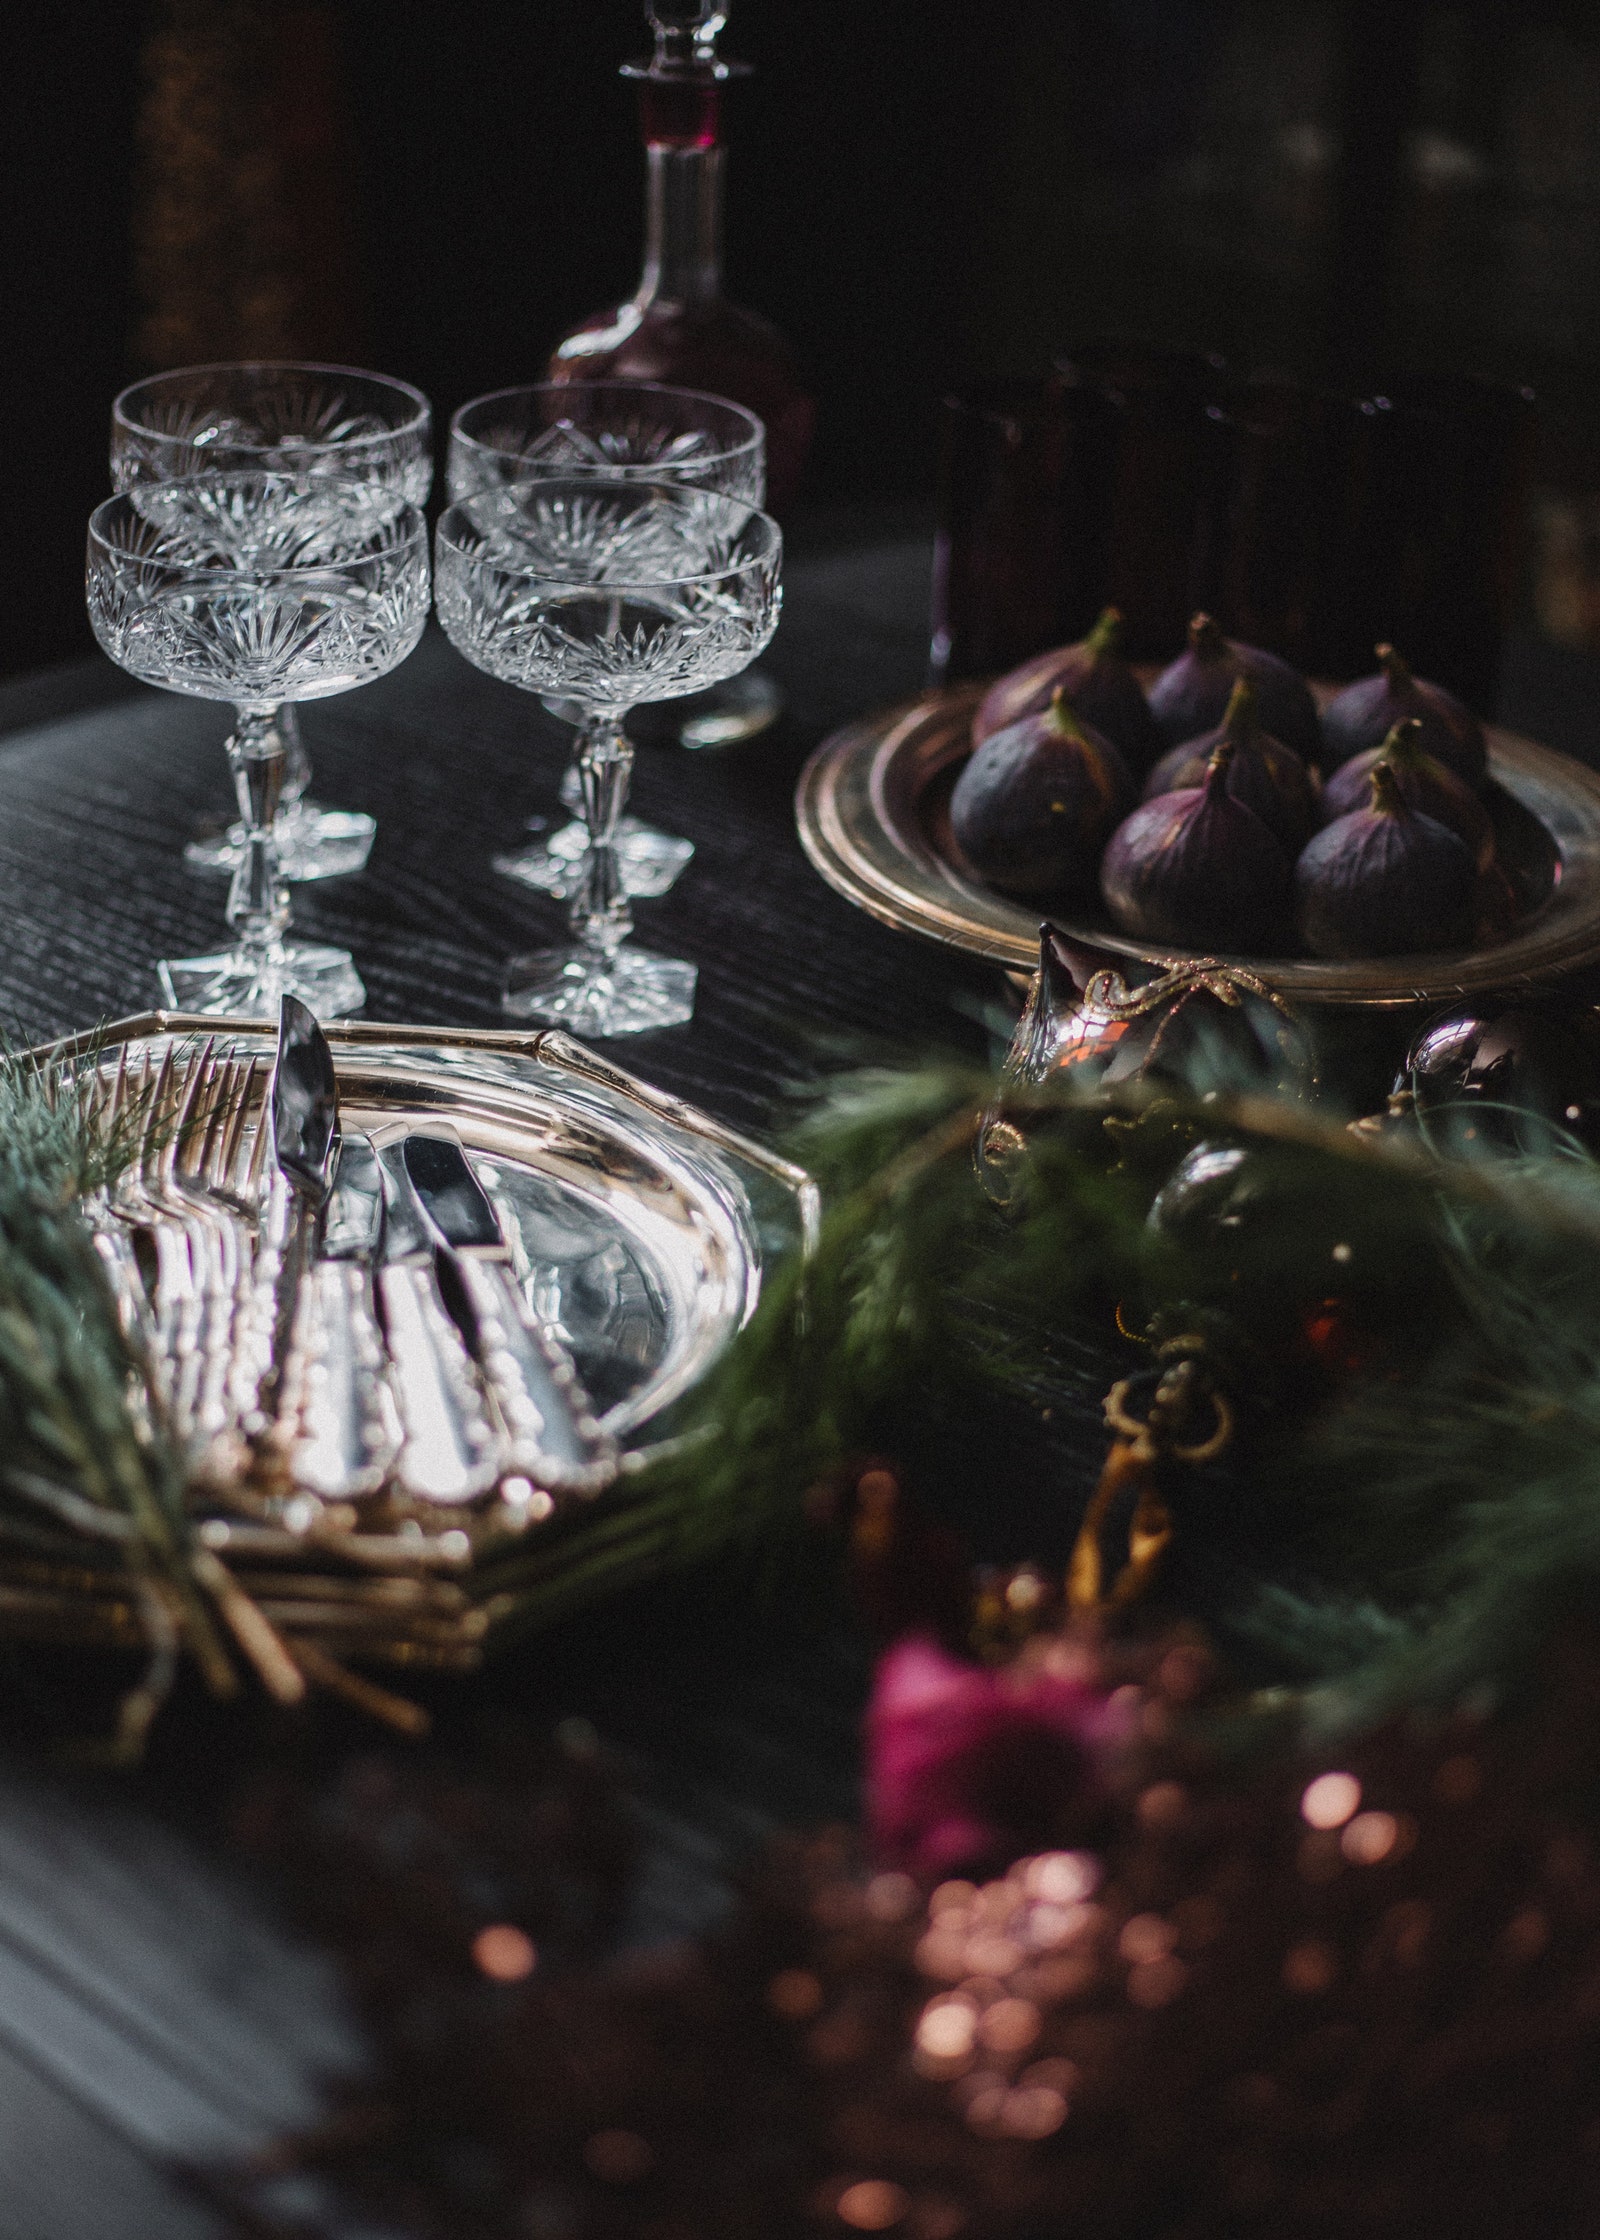 От скатерти до тарелок: как сервировать праздничный стол на Новый год